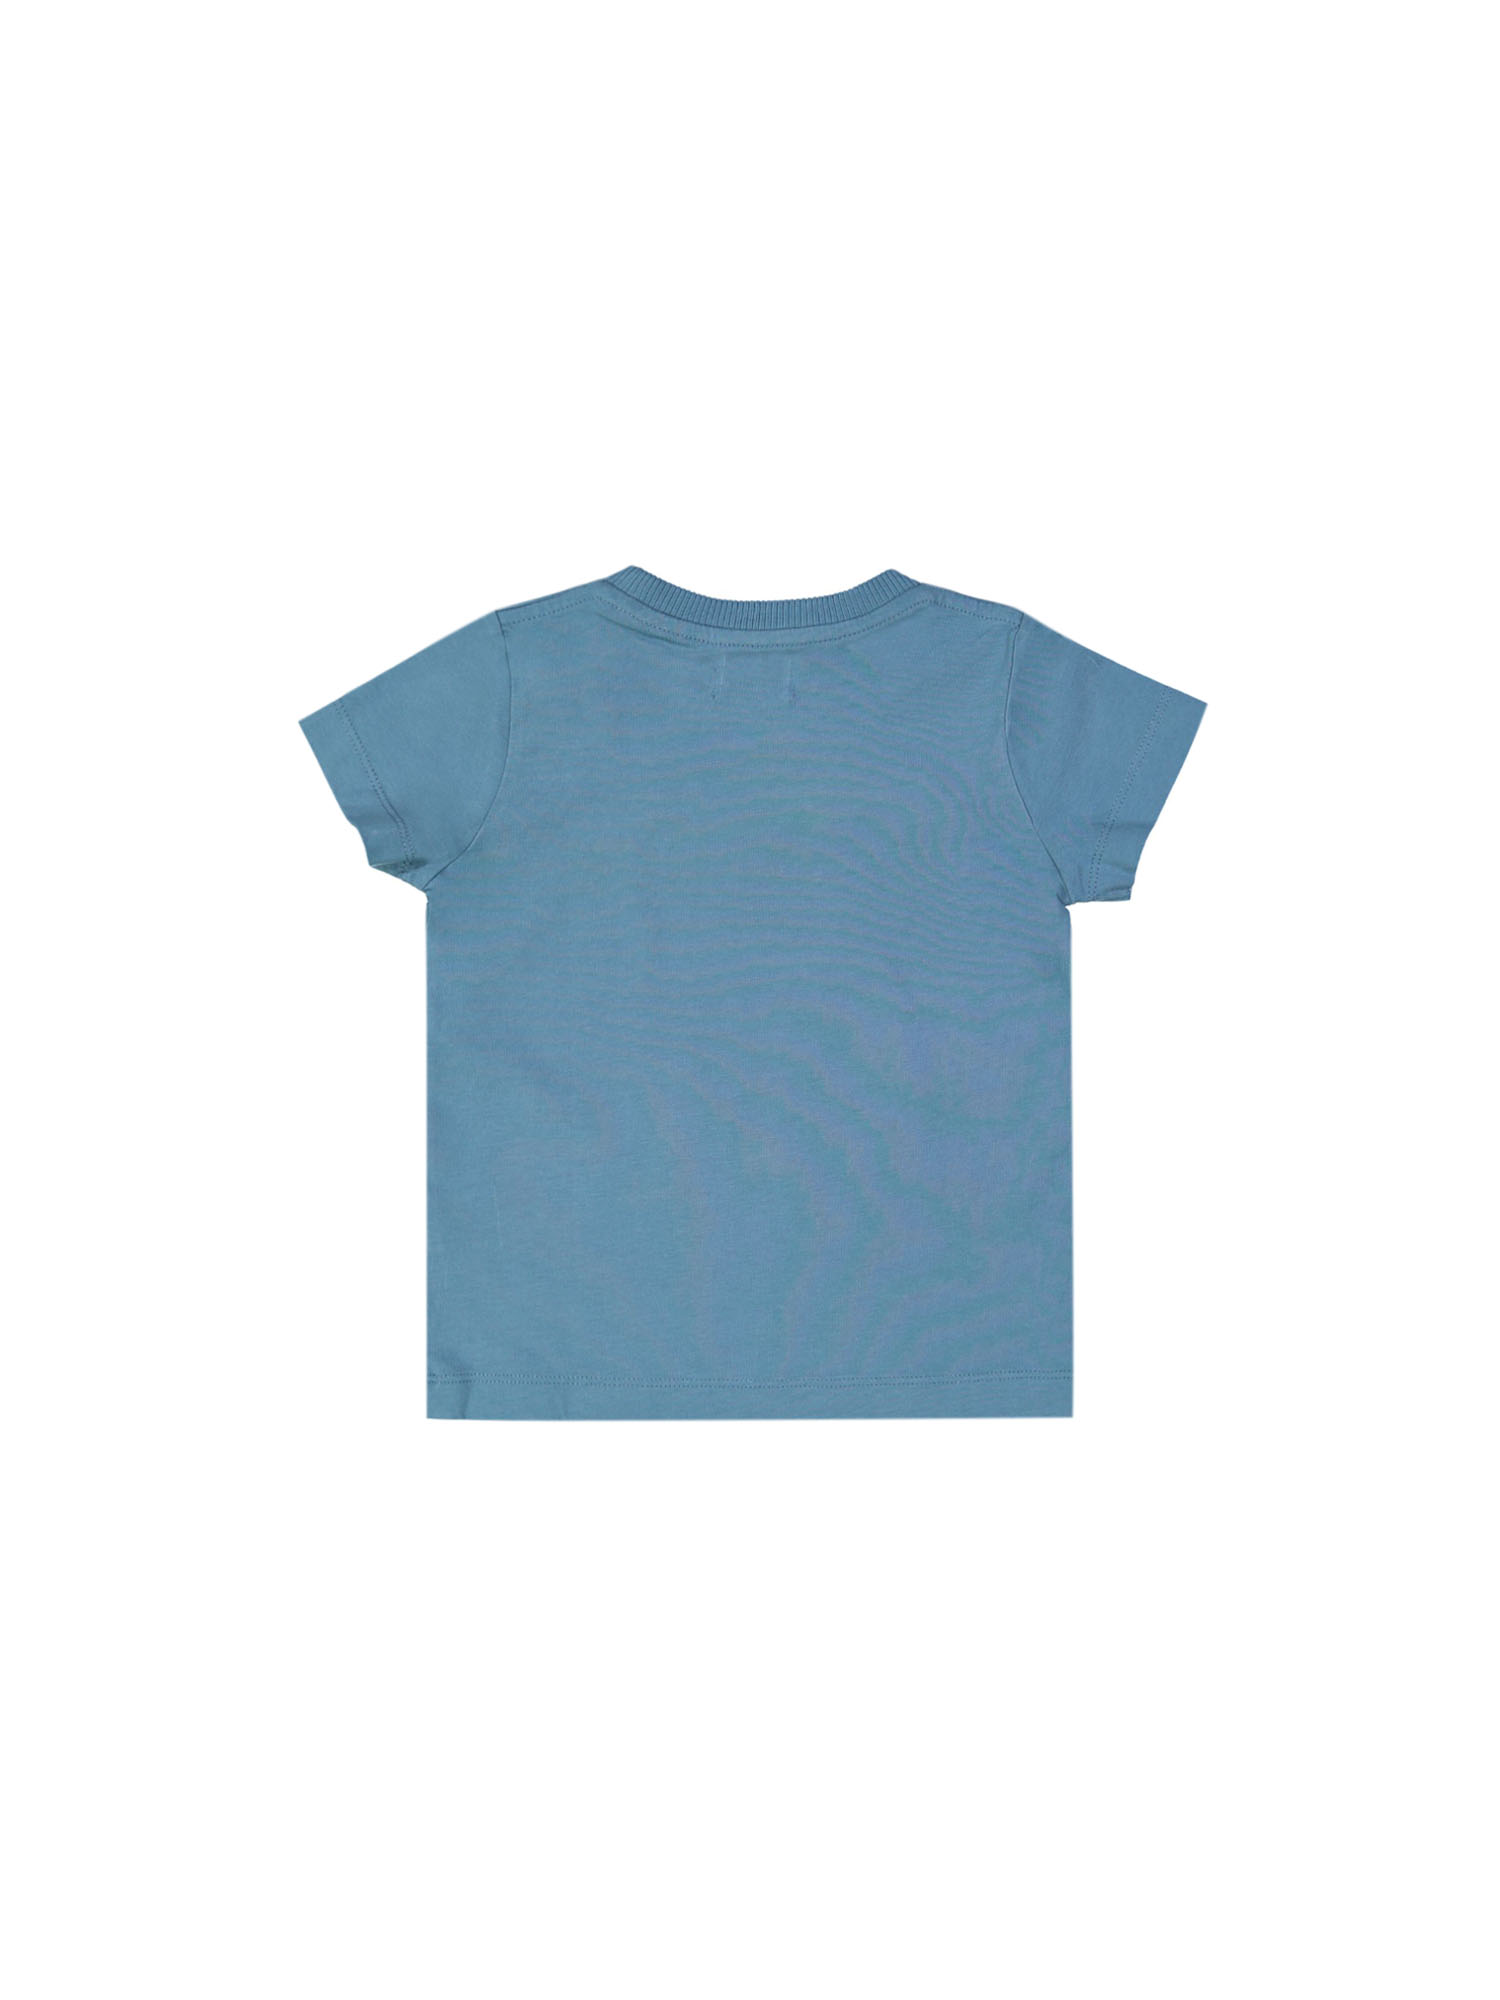 t-shirt homerun bleu jean